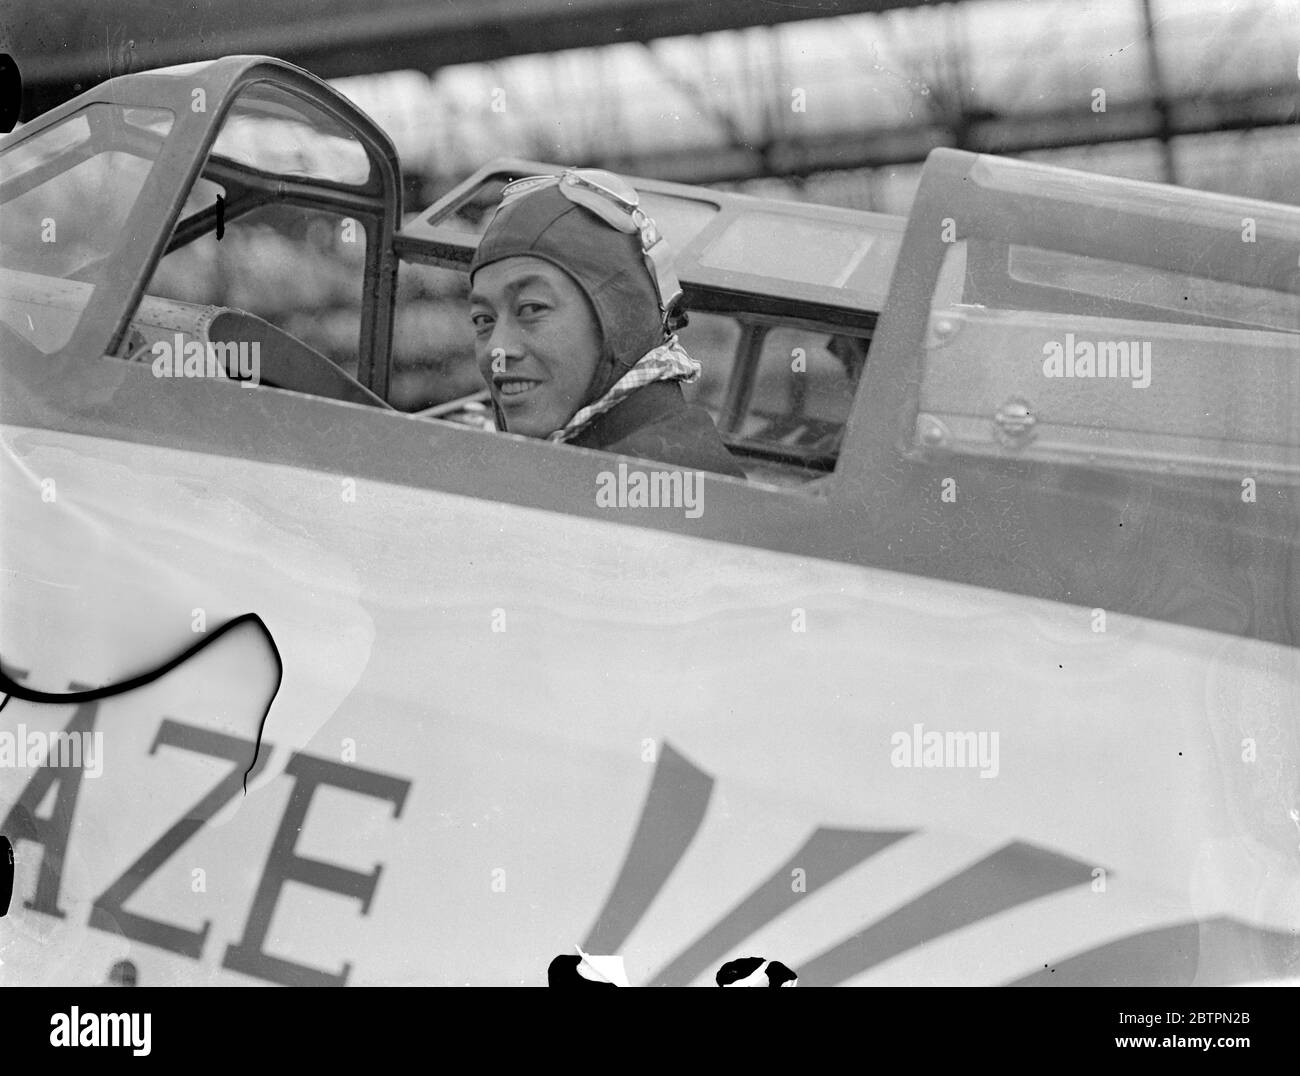 L'asso dell'aria giapponese è stato ferito male. Masaaki Iinuma, uno dei principali assi aerei giapponesi, è stato gravemente ferito da un incendio britannico anti-aereo, o ha preso parte a un raid sulla Malaya settentrionale. Iinuma, uno dei principali aerei giapponesi, è il noto pilota che ha effettuato il volo da Tokyo a Londra nel 'vento più divino' aereo nel 1937. Spettacoli fotografici, Masaaki Iinuma. 4 gennaio 1942 Foto Stock